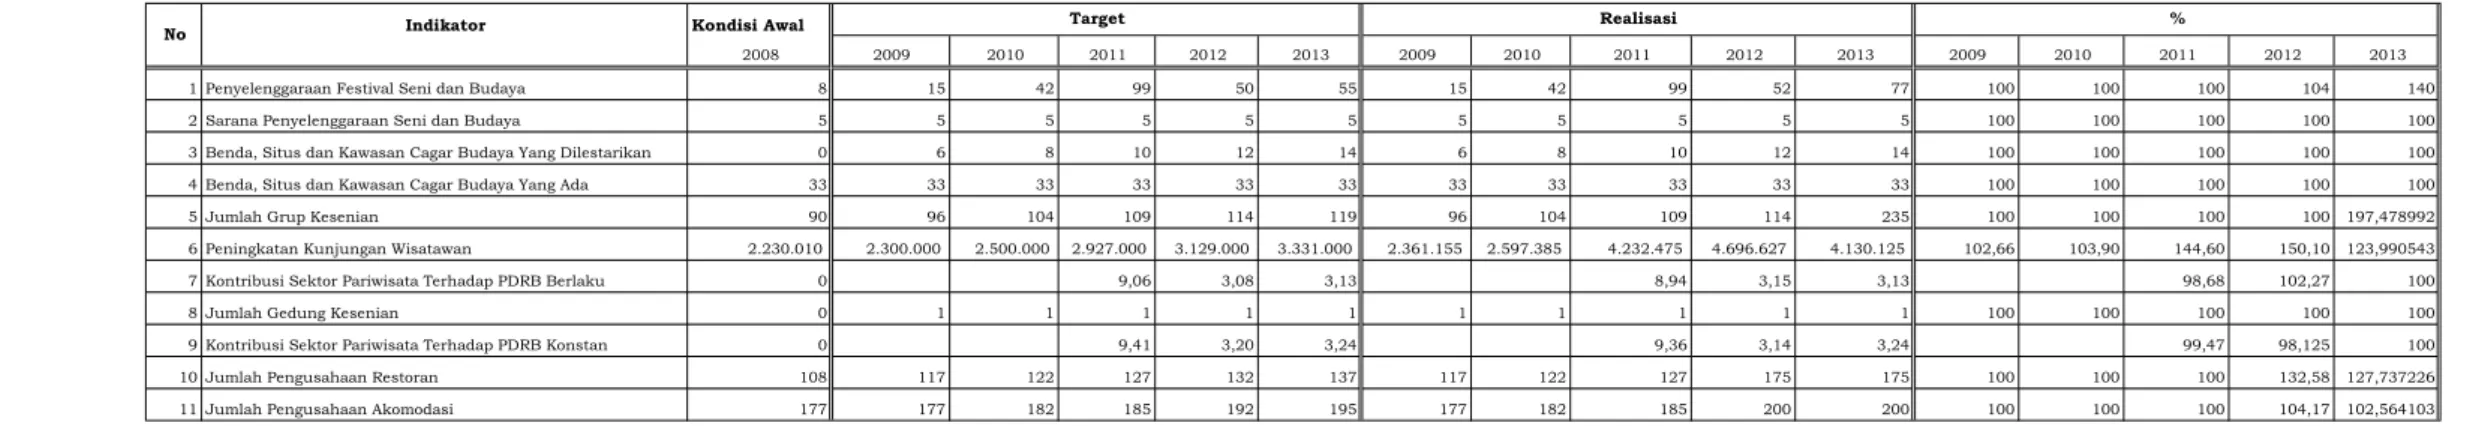 Tabel 2.4.1. Pencapaian Indikator Kinerja Dinas Kebudayaan dan Pariwisata Tahun 2008 - 2013